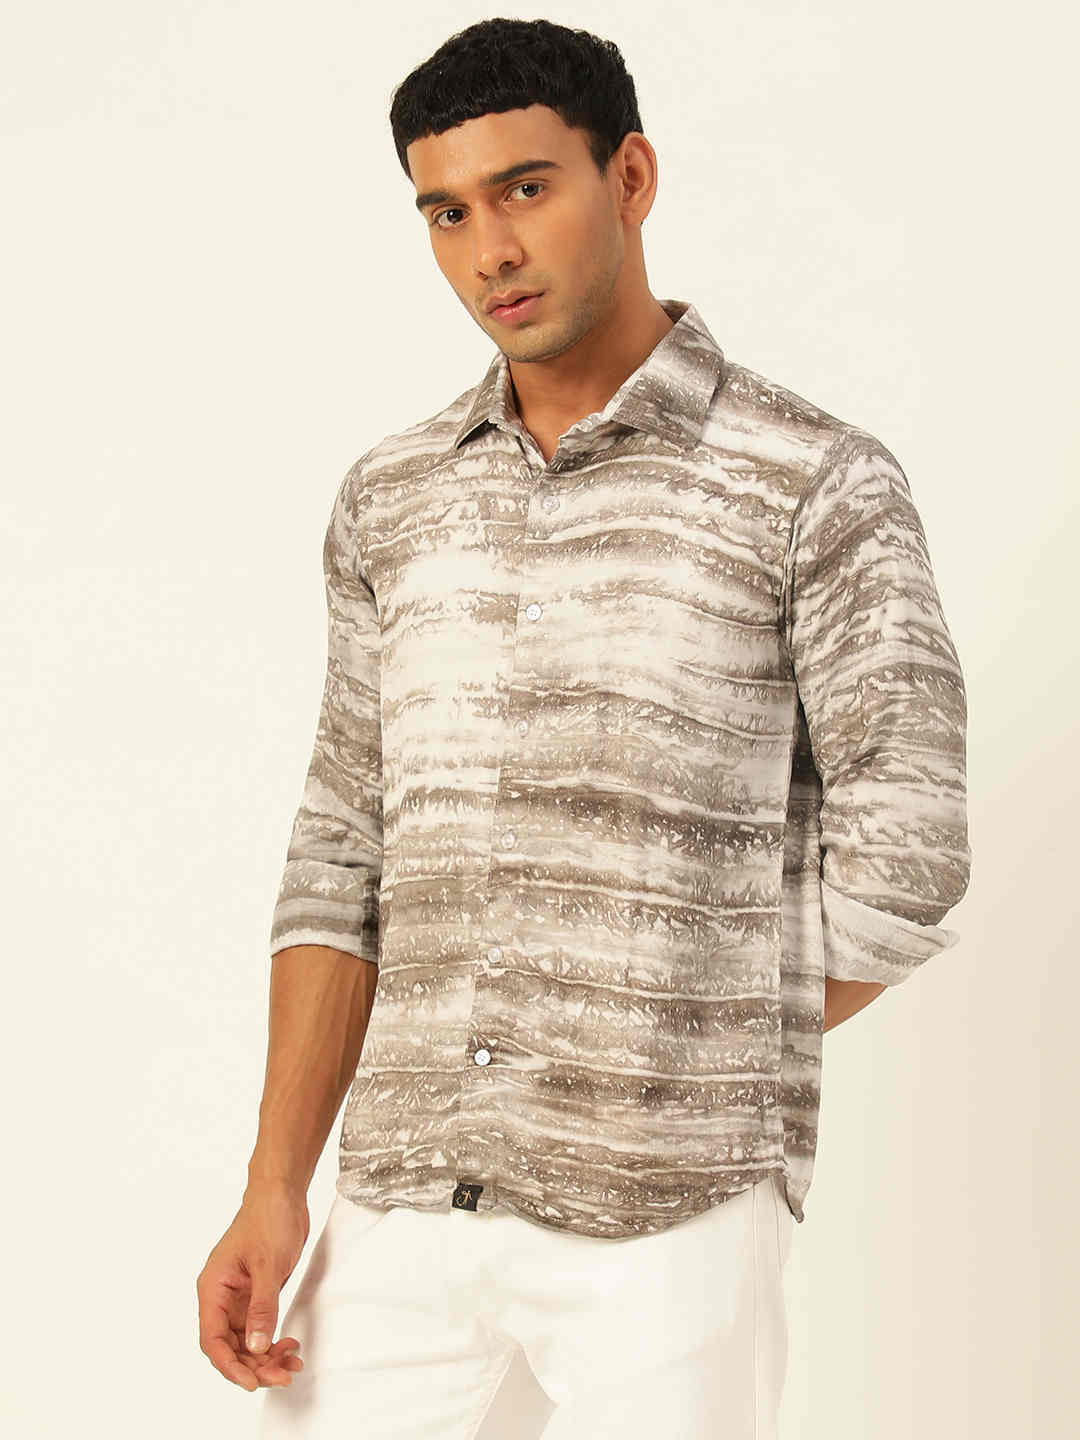 Premium Grey & White Tie Dye Slim Fit Rayon Shirt